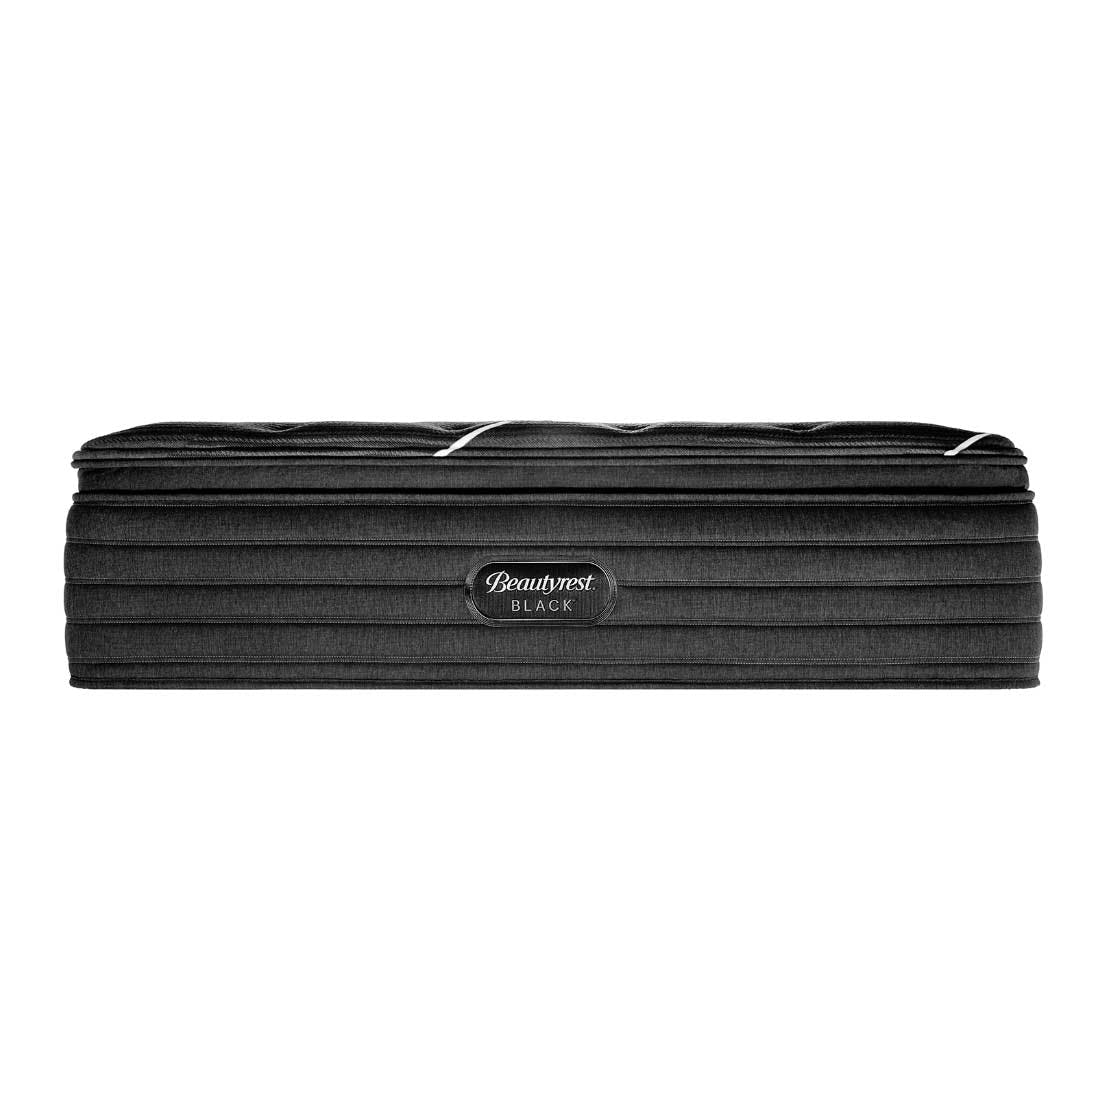 Beautyrest Black K-Class Ultra Plush Pillow Top